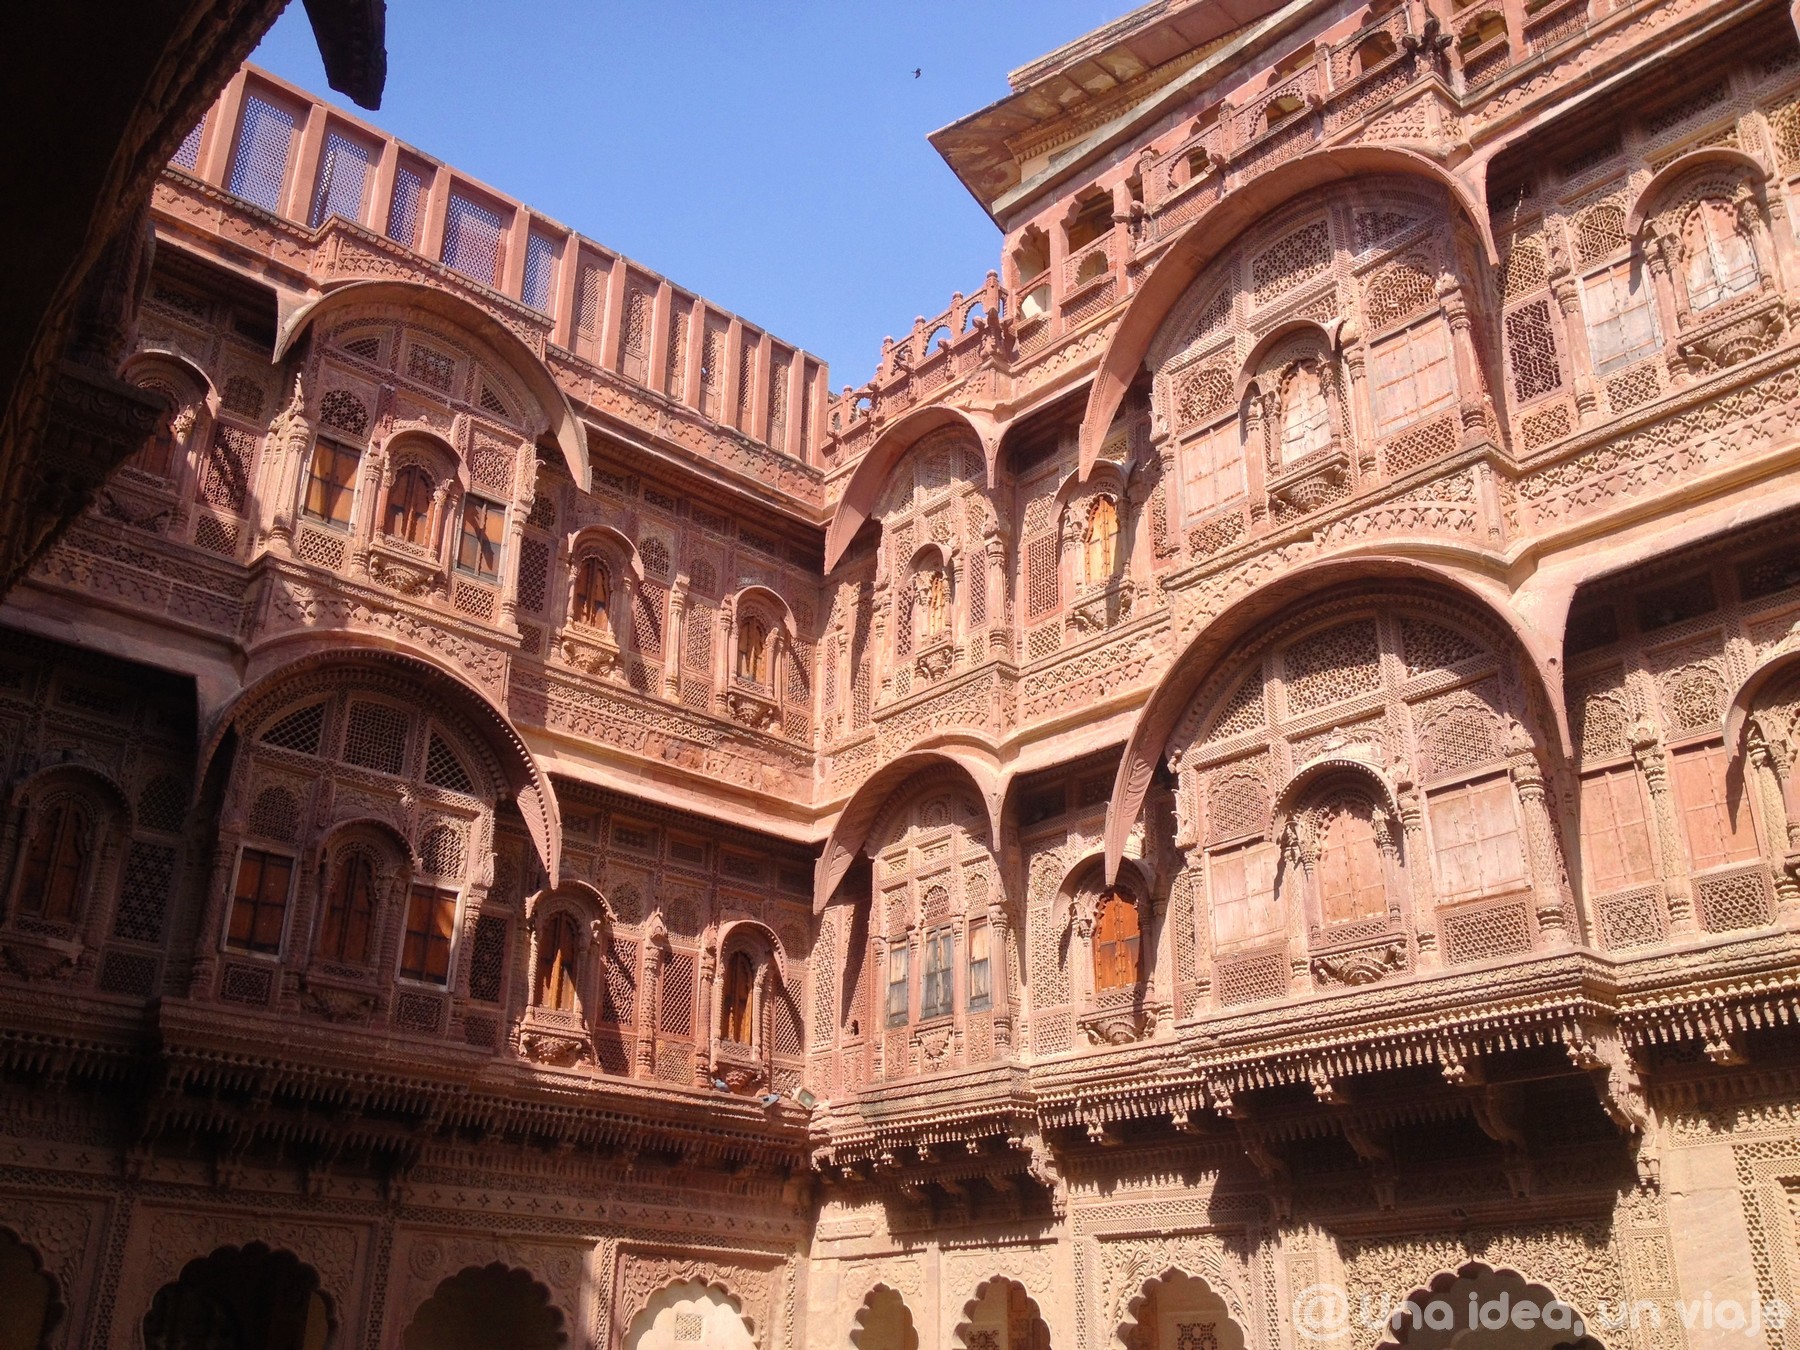 india-rajastan-15-dias-jodhpur-visitar-unaideaunviaje-08